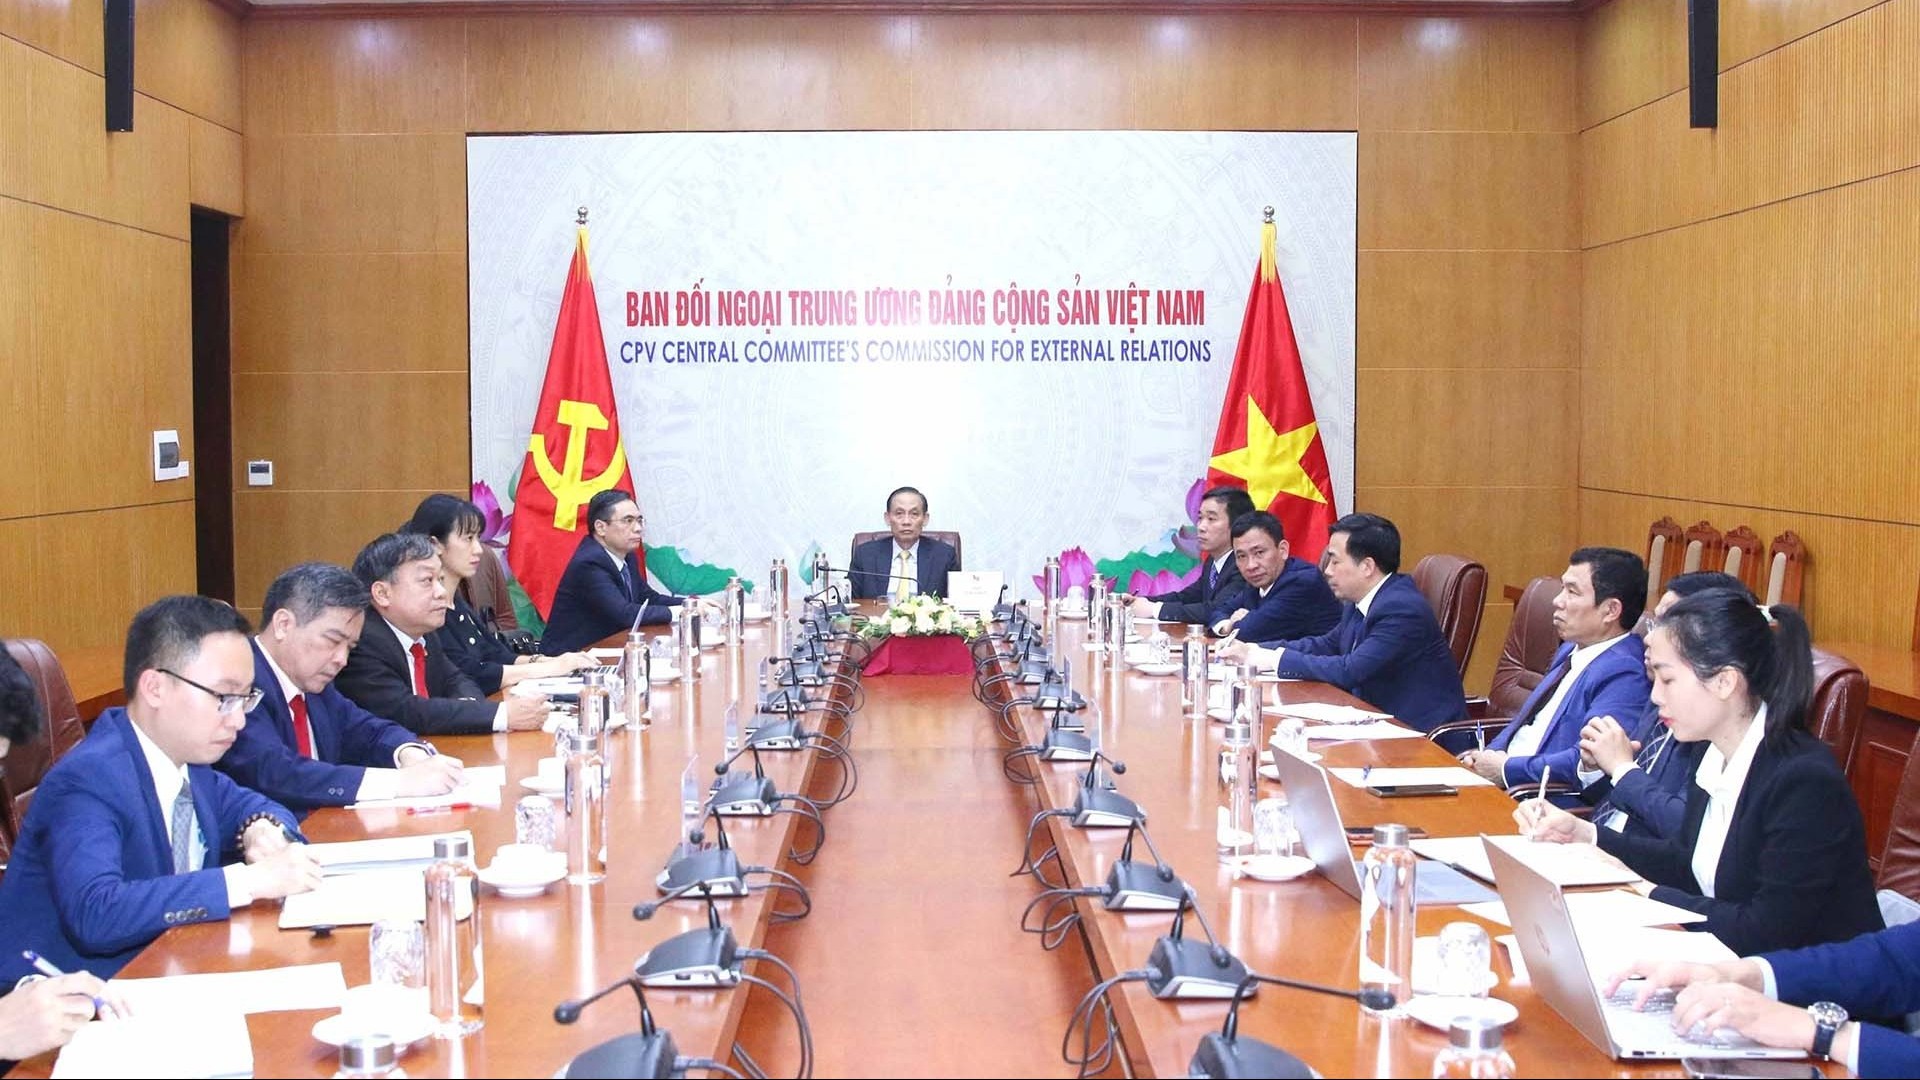 Đoàn đại biểu Đảng Cộng sản Việt Nam dự Hội nghị đối thoại cấp cao giữa Đảng Cộng sản Trung Quốc với các chính đảng trên thế giới